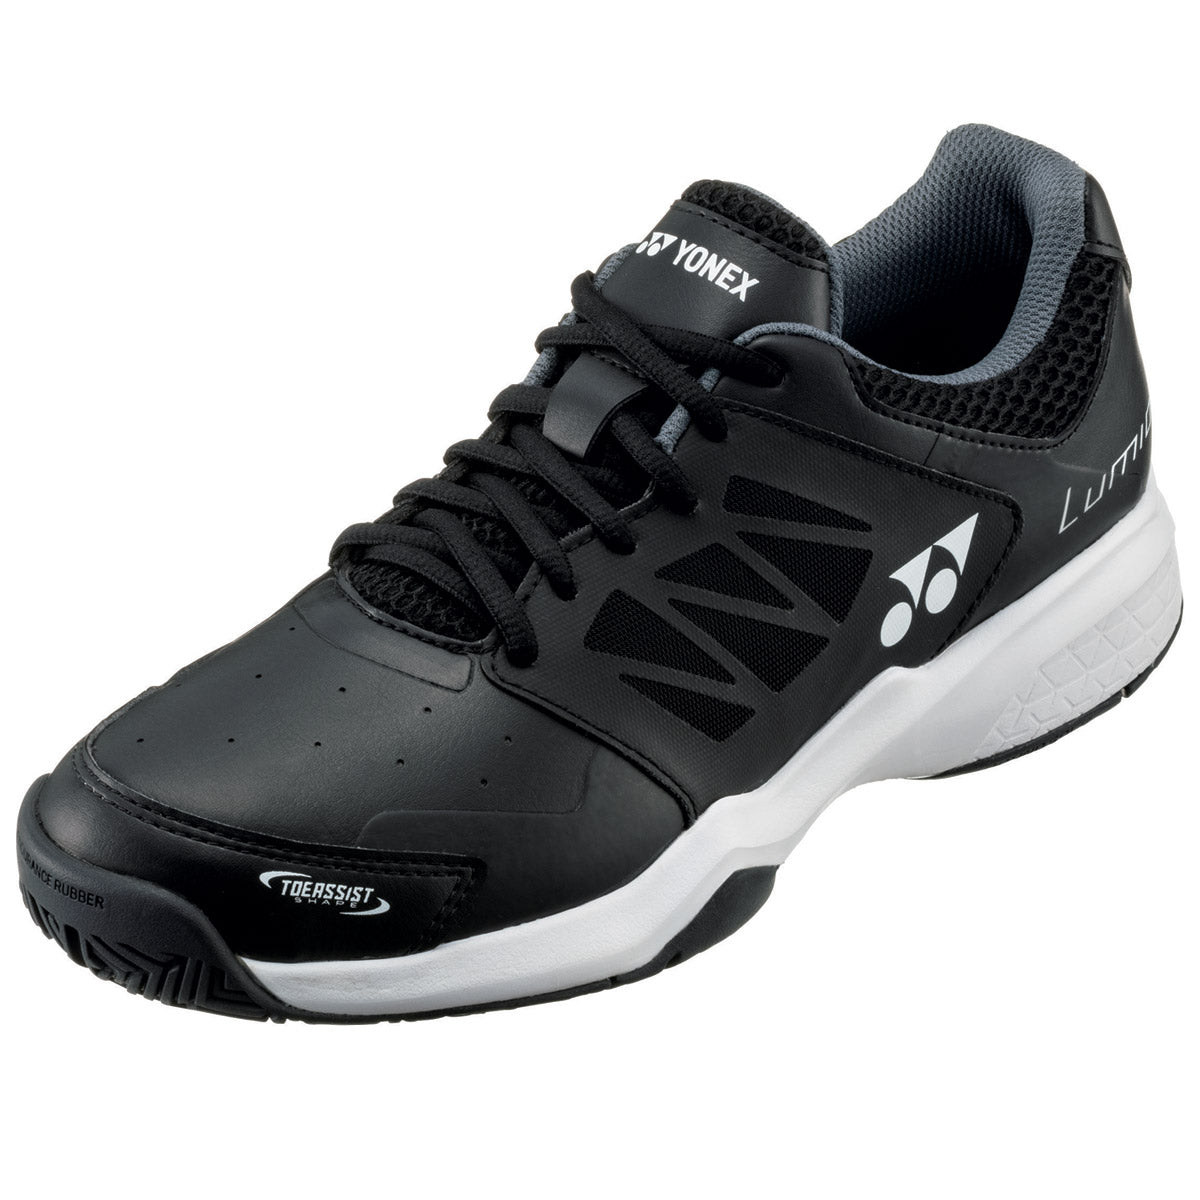 Yonex Lumio 3 Tennis Shoes Mens (Black)